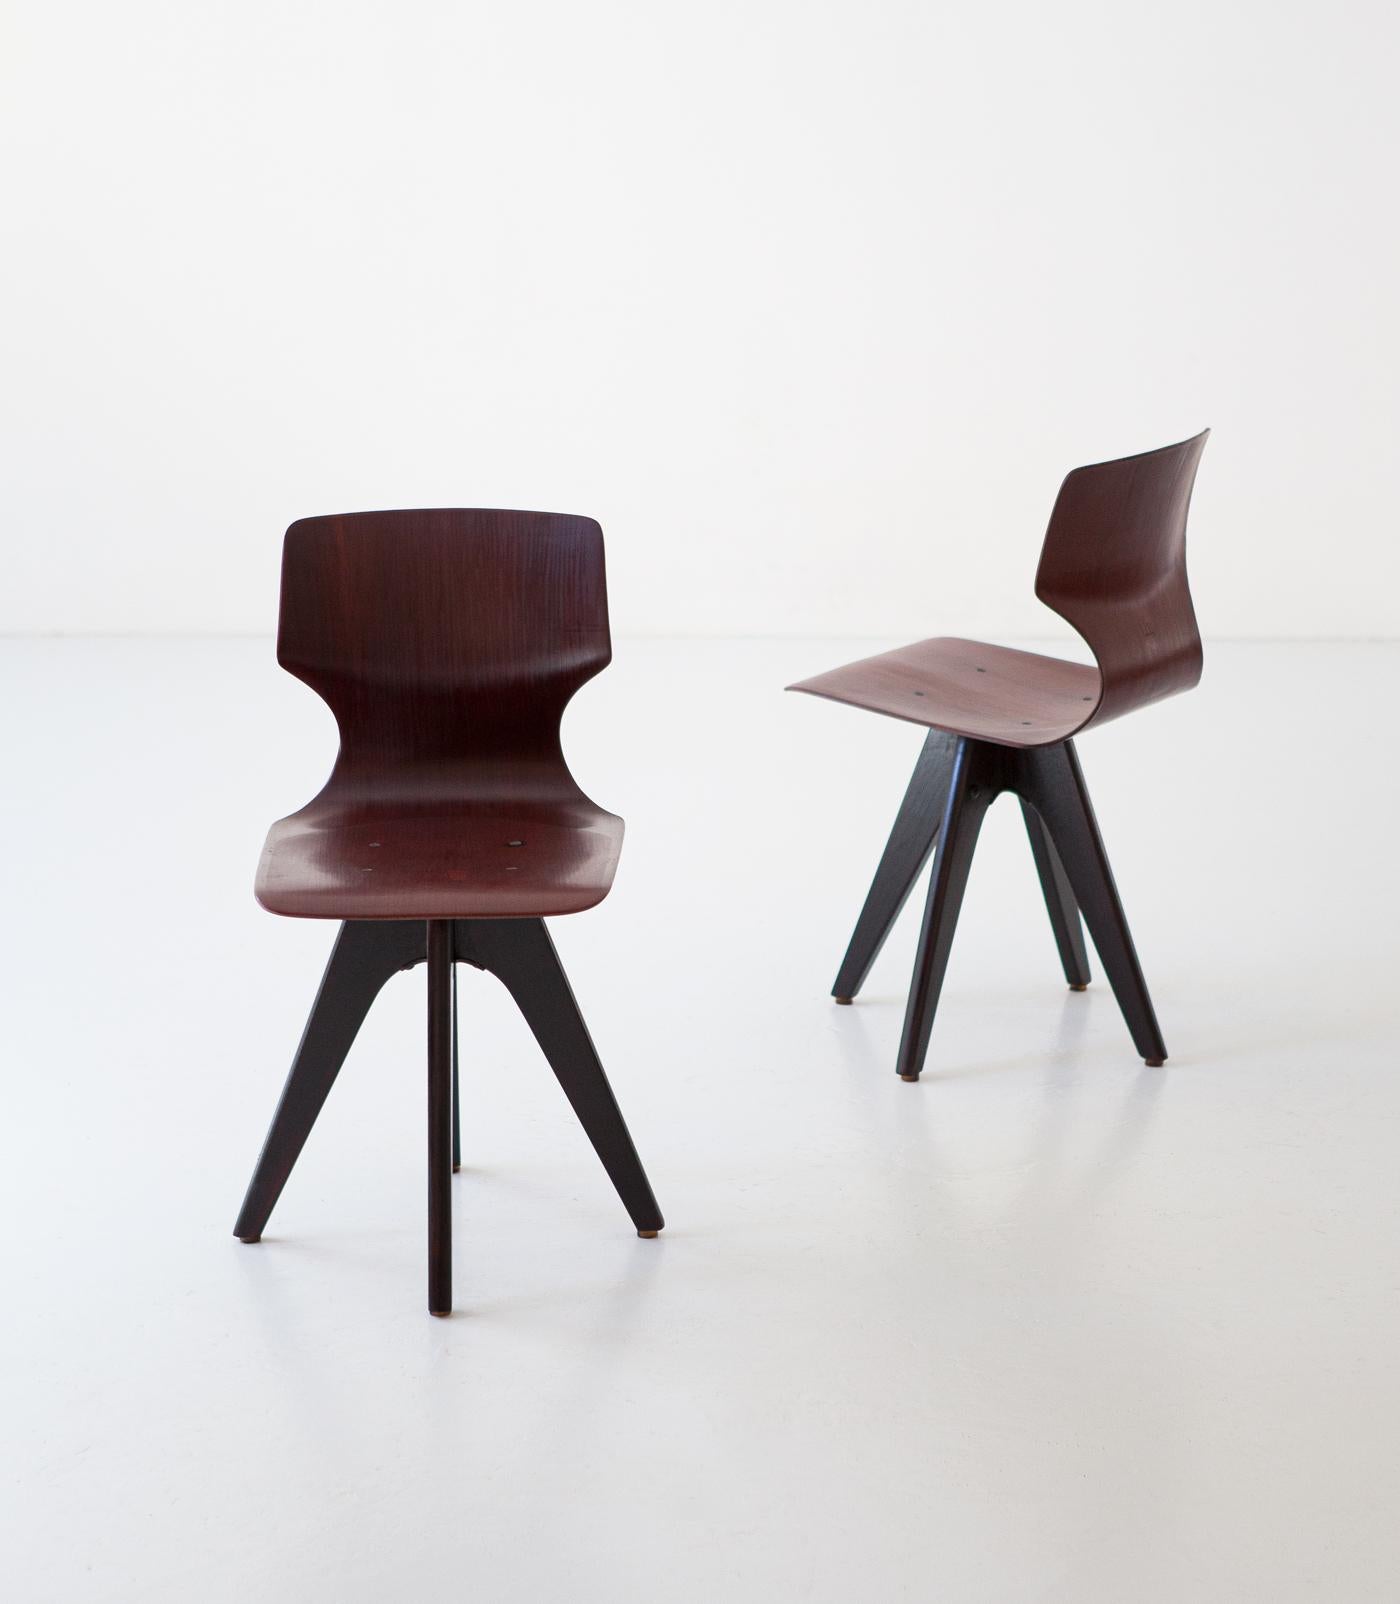 petit tabouret ou chaises d'appoint en bois courbé des années 1950 
Assise en bois courbé teinté et pieds en bois poli avec une teinture brun foncé à la gomme-laque.